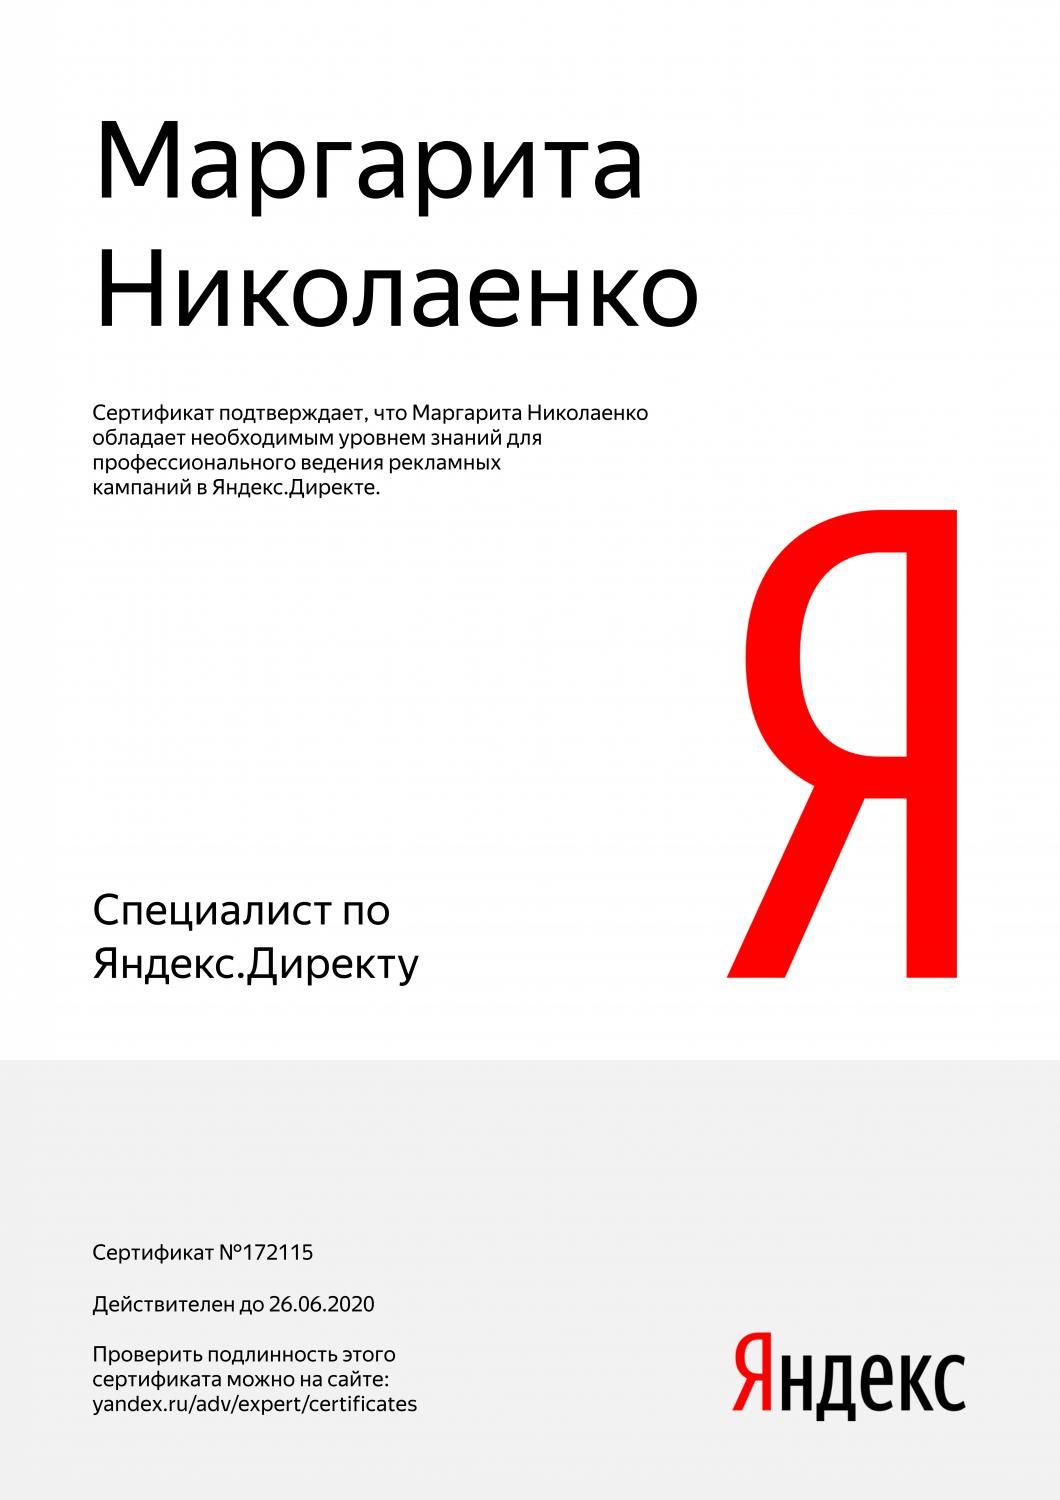 Сертификат специалиста Яндекс. Директ - Николаенко М. в Южно-Сахалинска